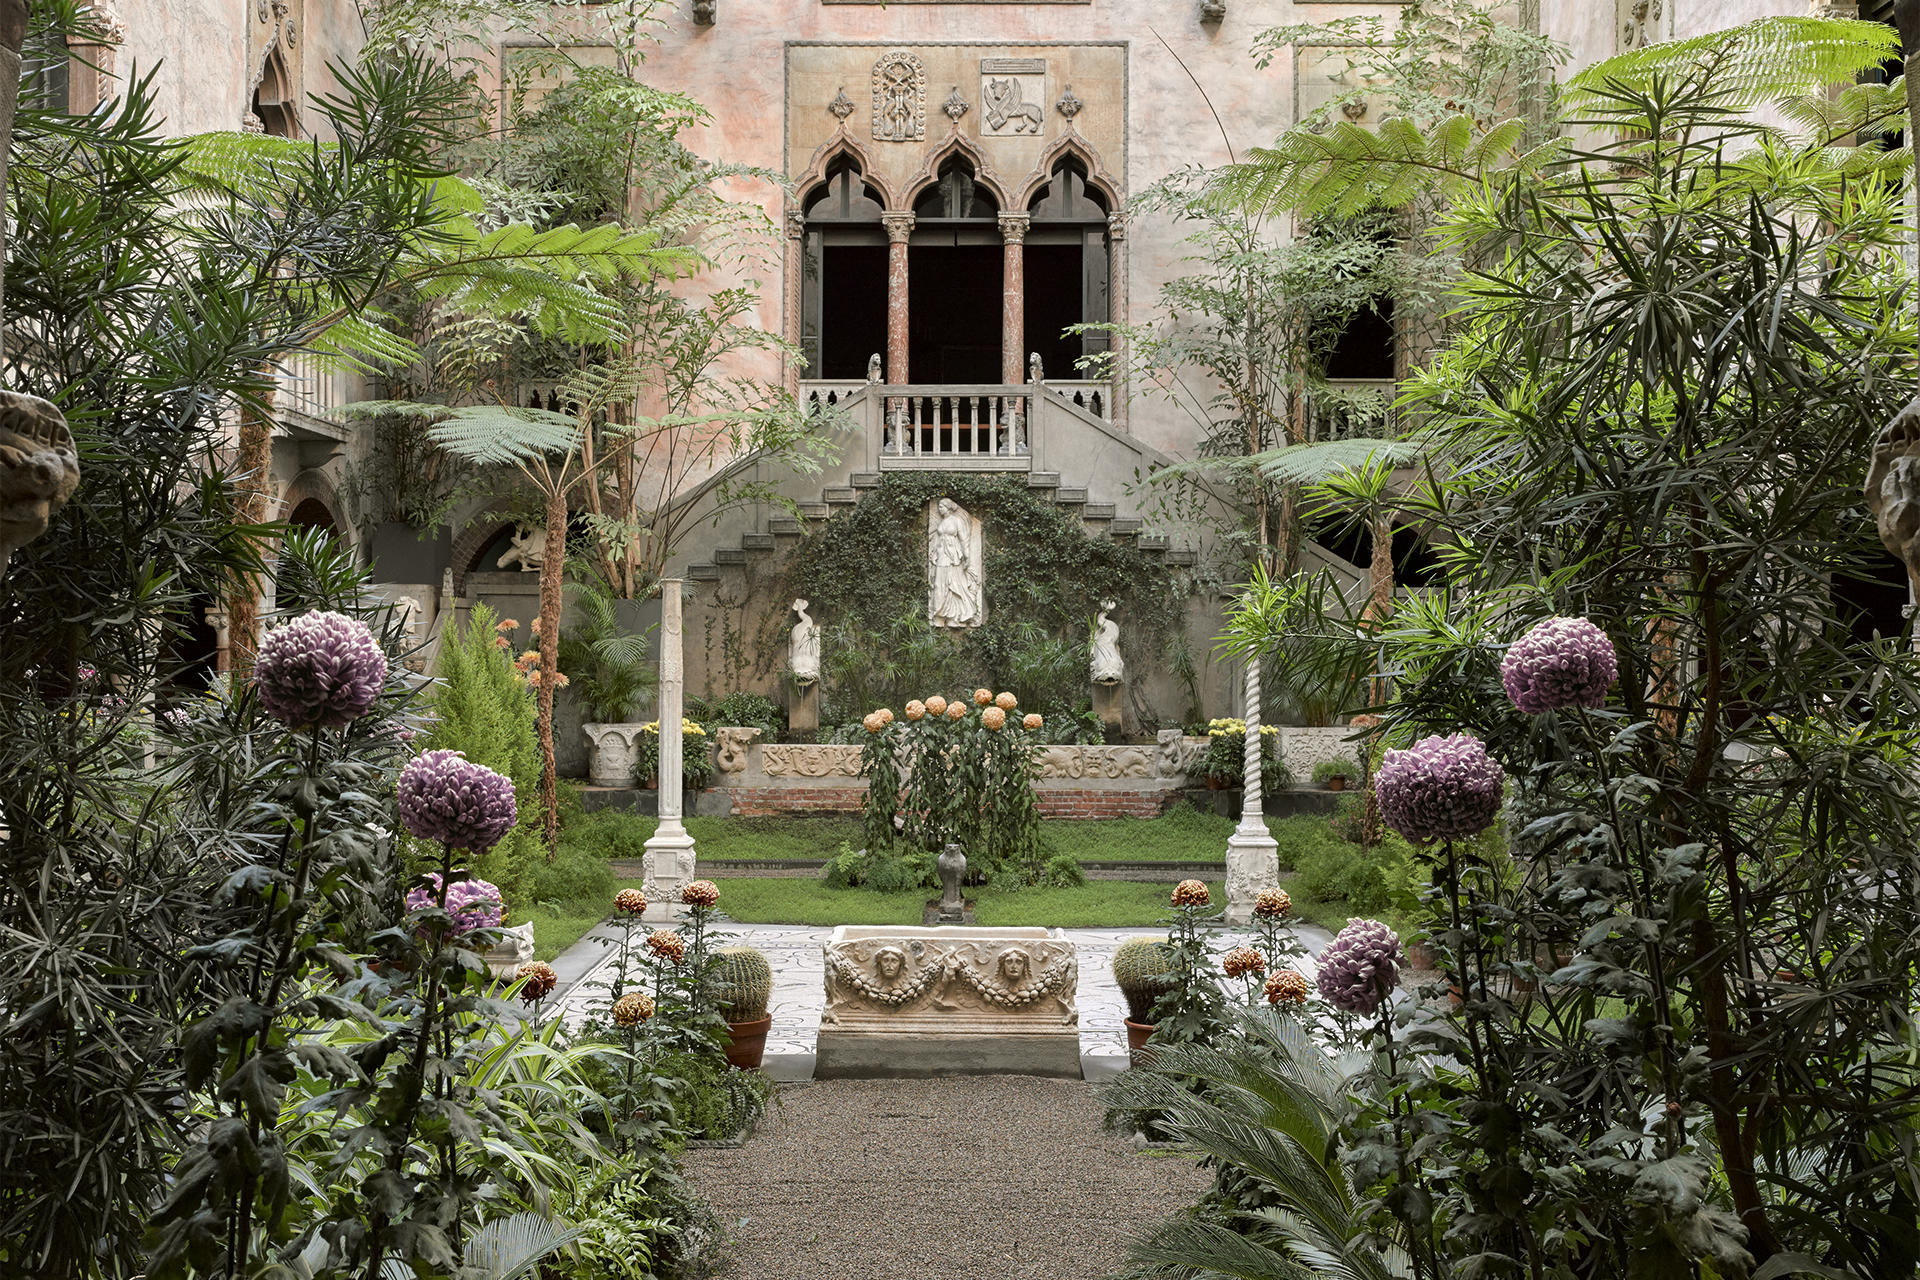 Chrysanthemum courtyard display at the Isabella Stewart Gardner Museum